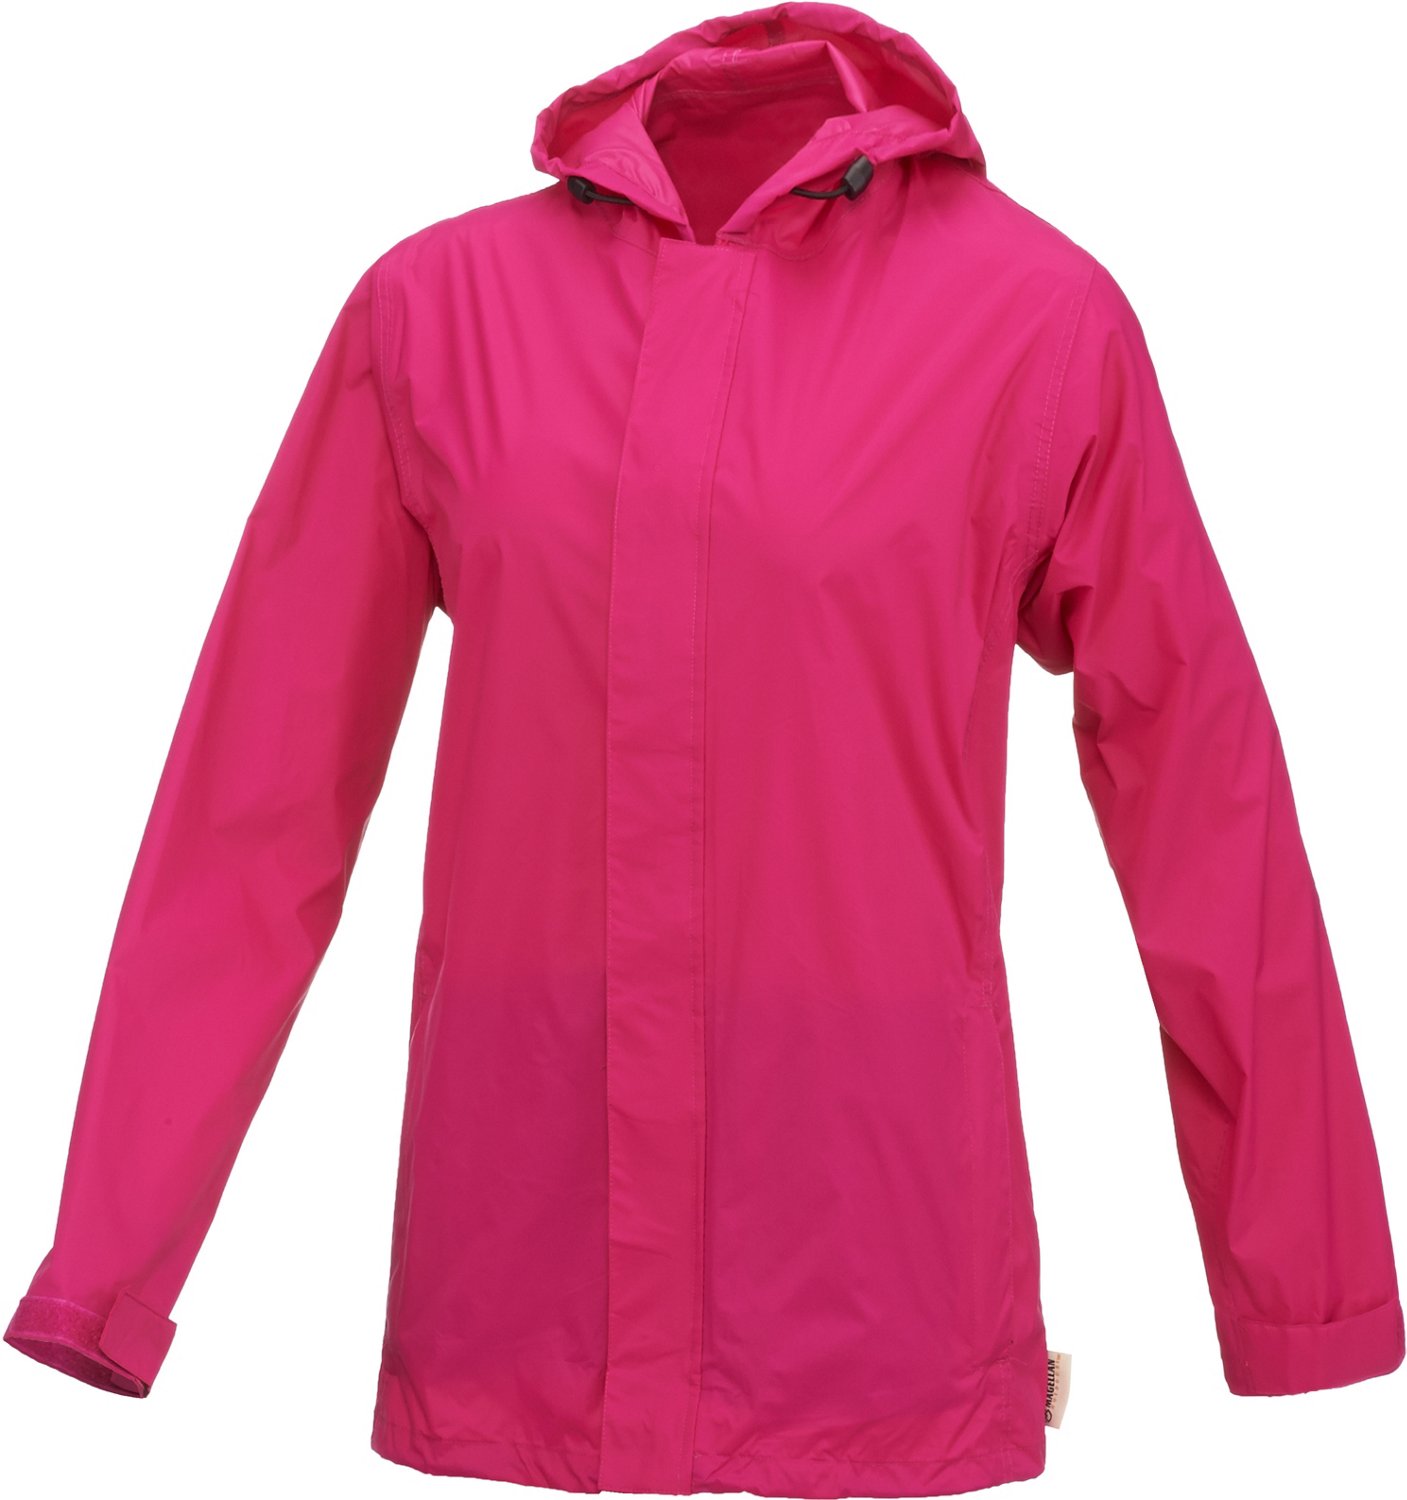 Magellan Outdoors Women's Packable Rain Jacket | Academy